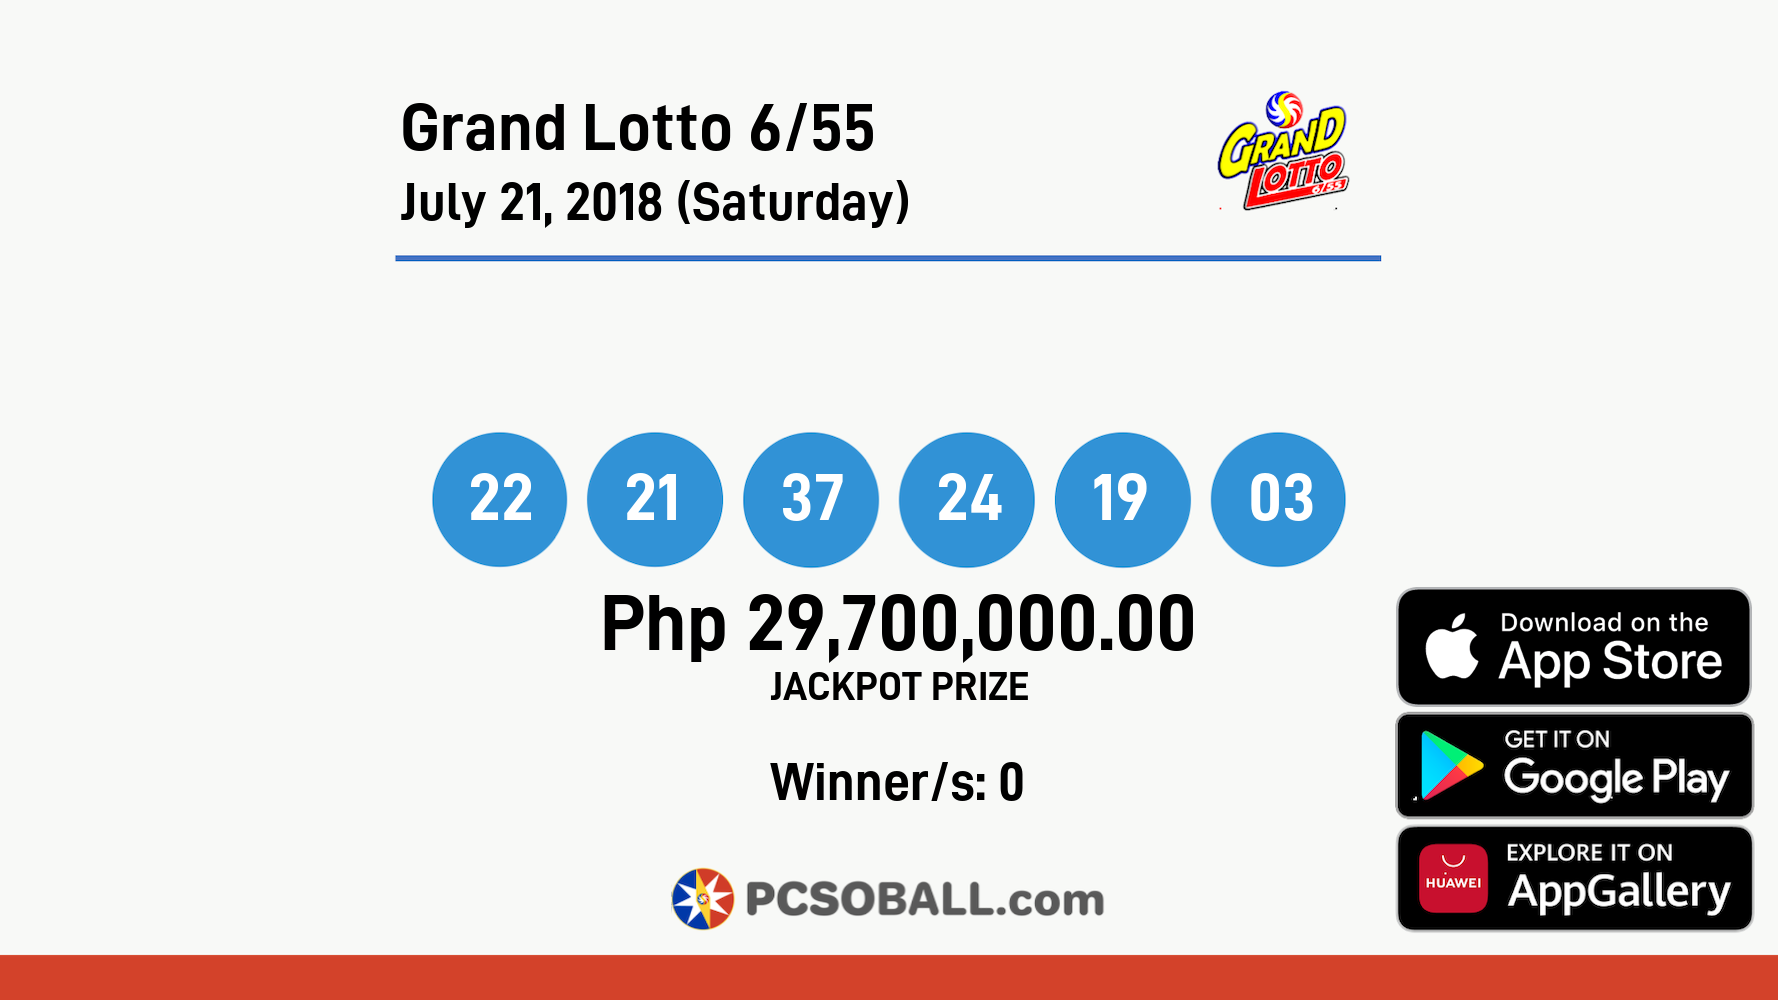 Grand Lotto 6/55 July 21, 2018 (Saturday) Result